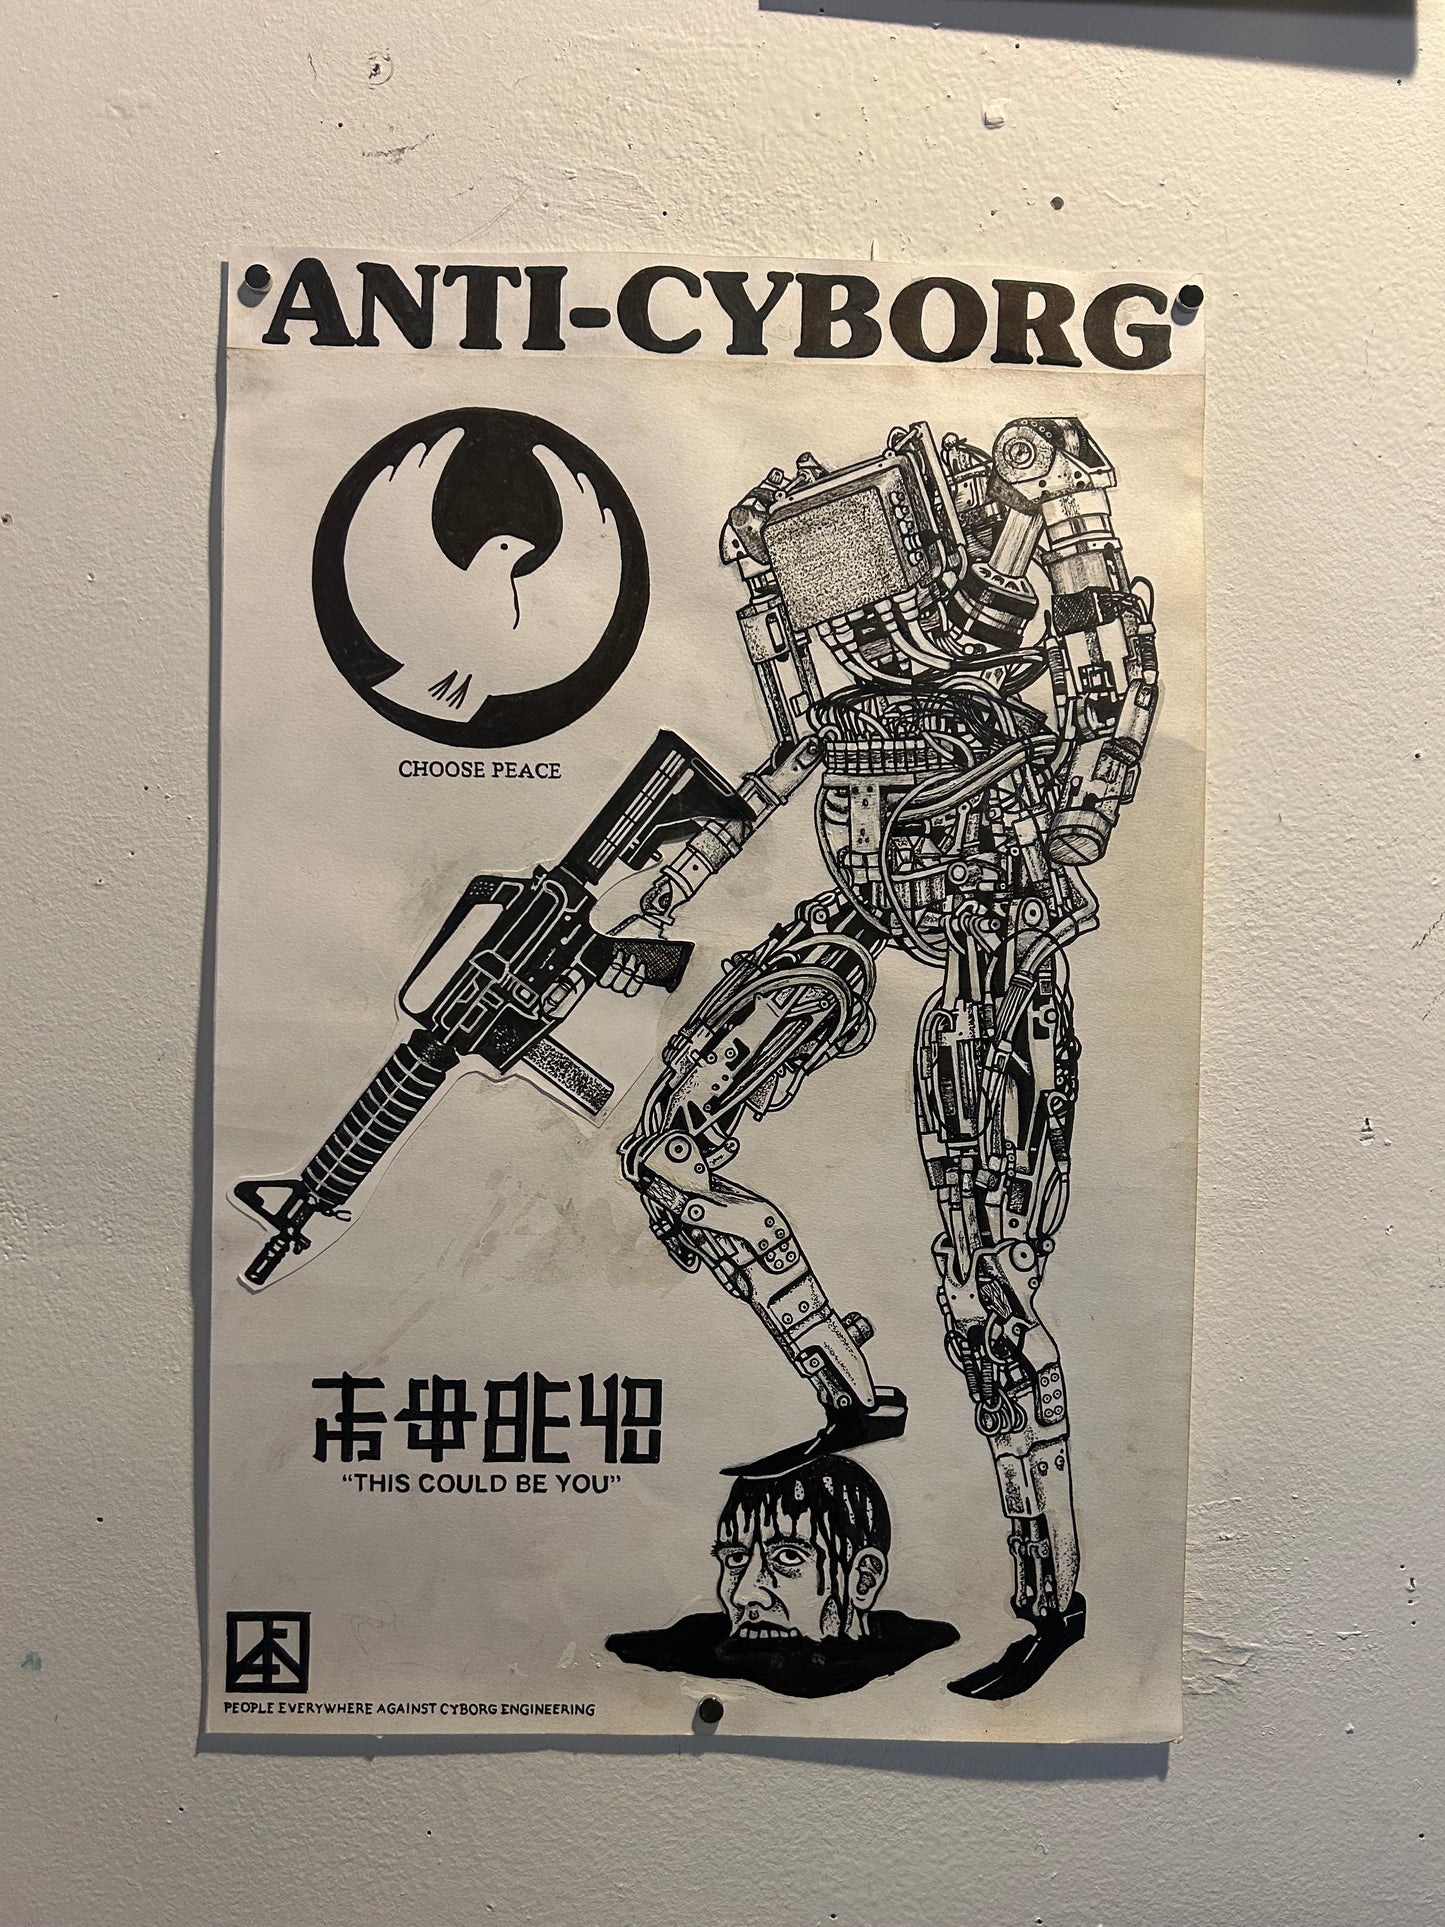 Death/Traitors "Anti Cyborg"